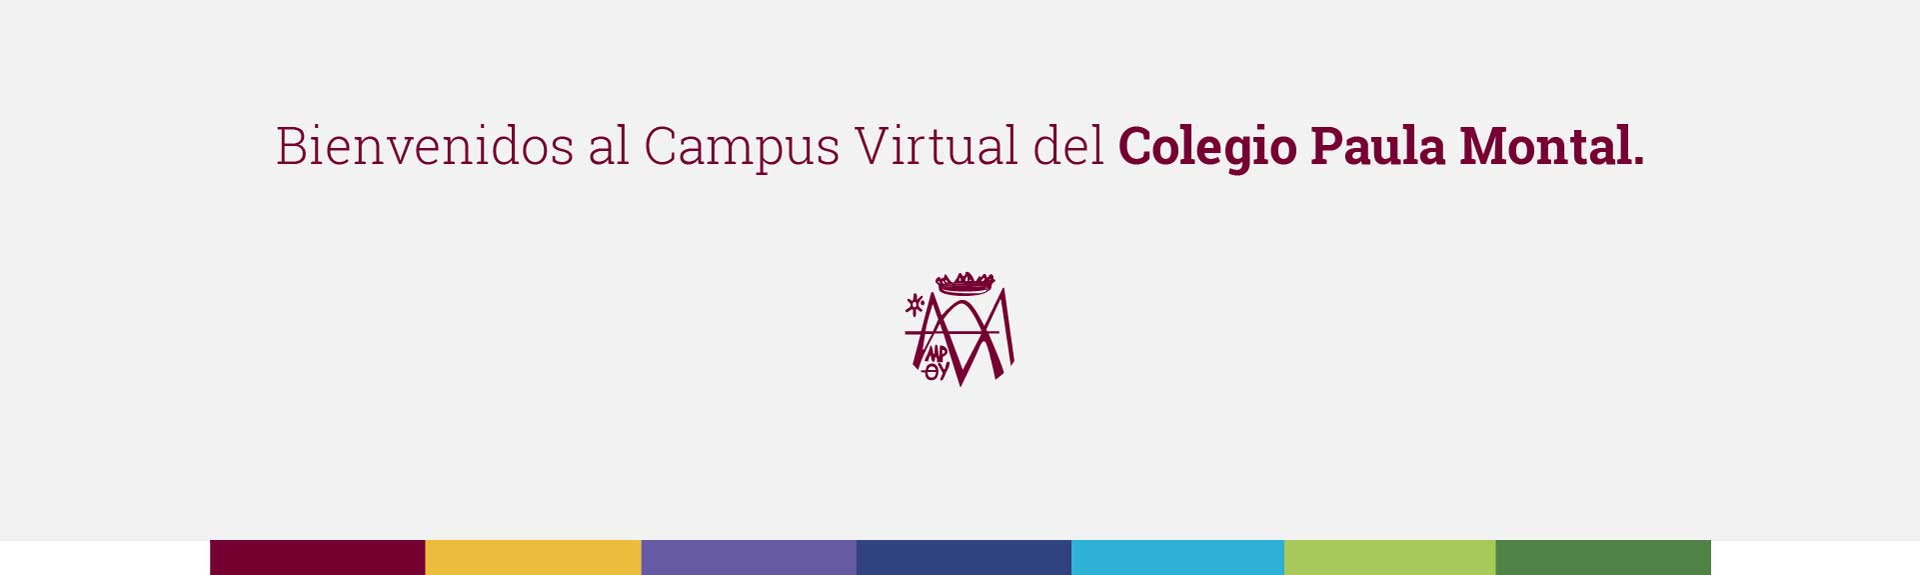 Bienvenidos al Campus Virtual del Colegio Paula Montal